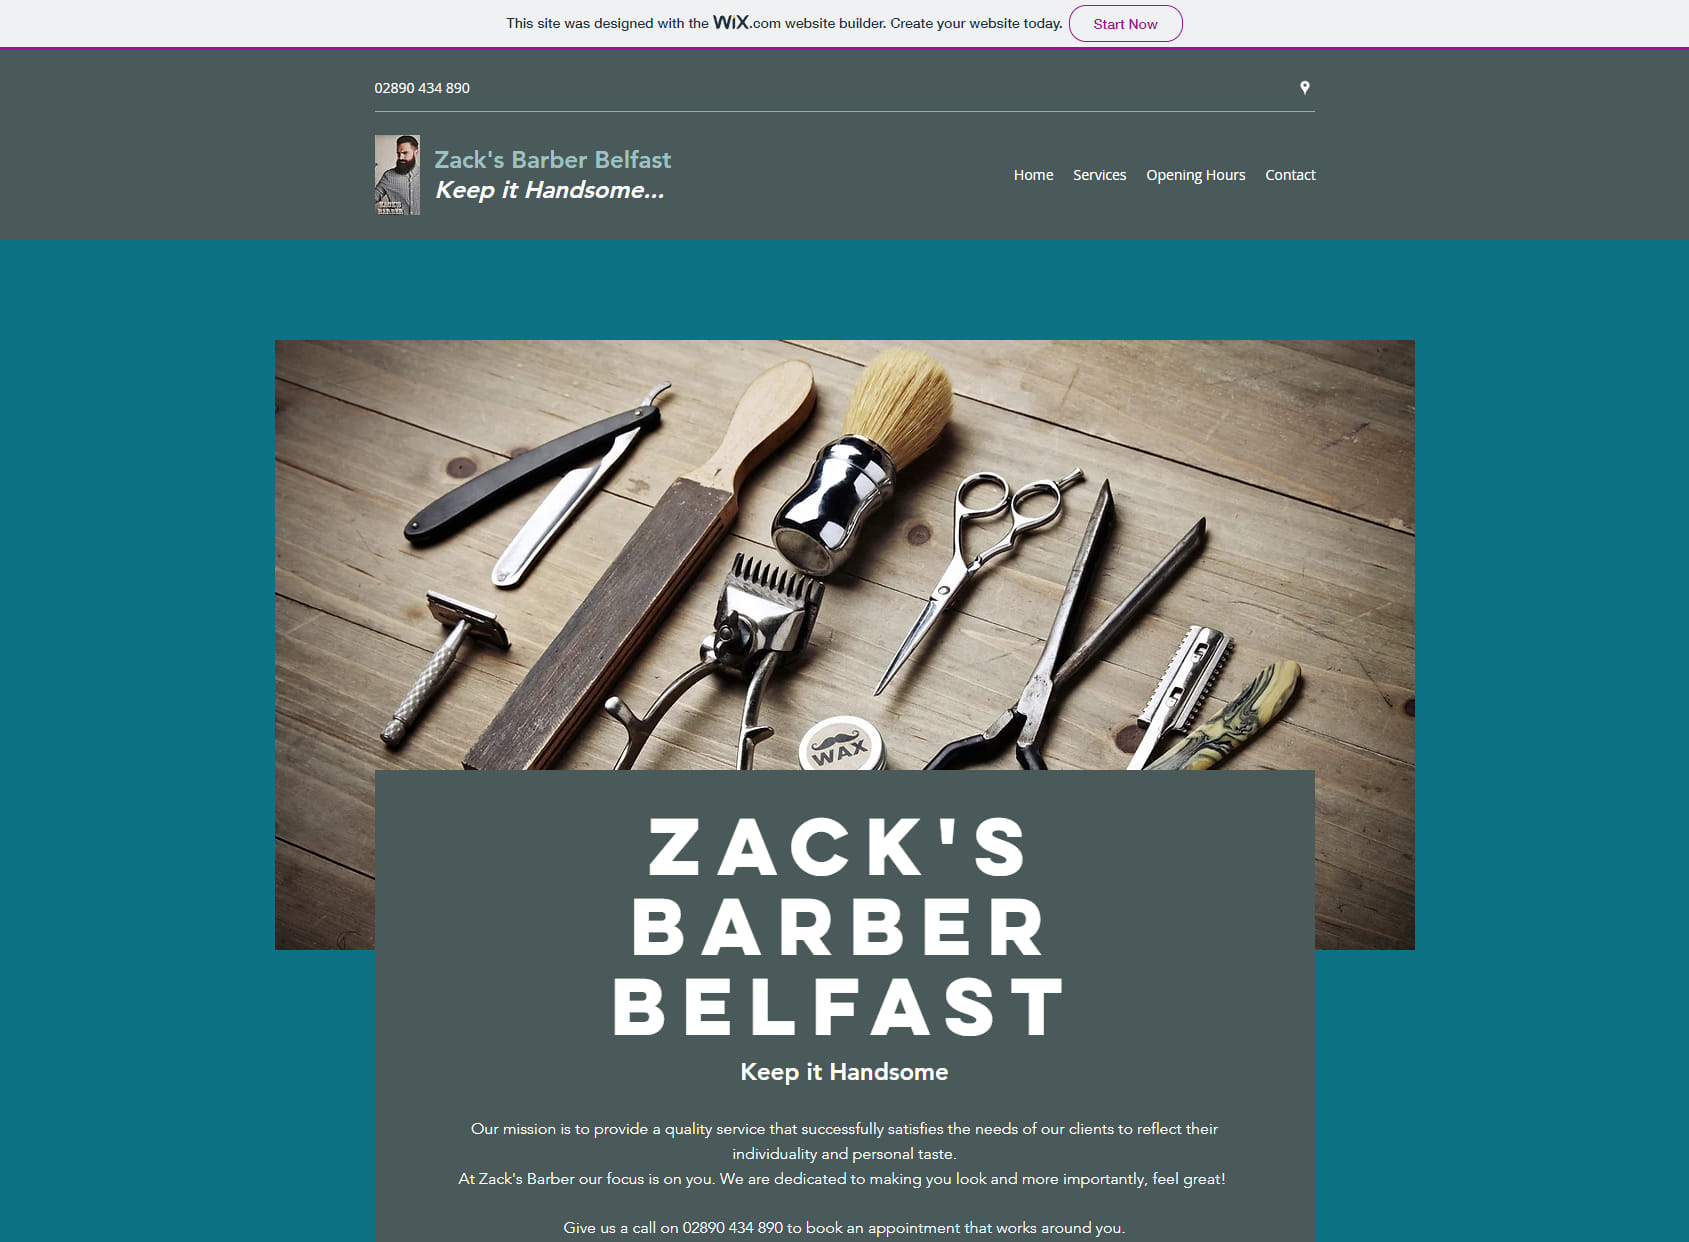 Zack's Barber